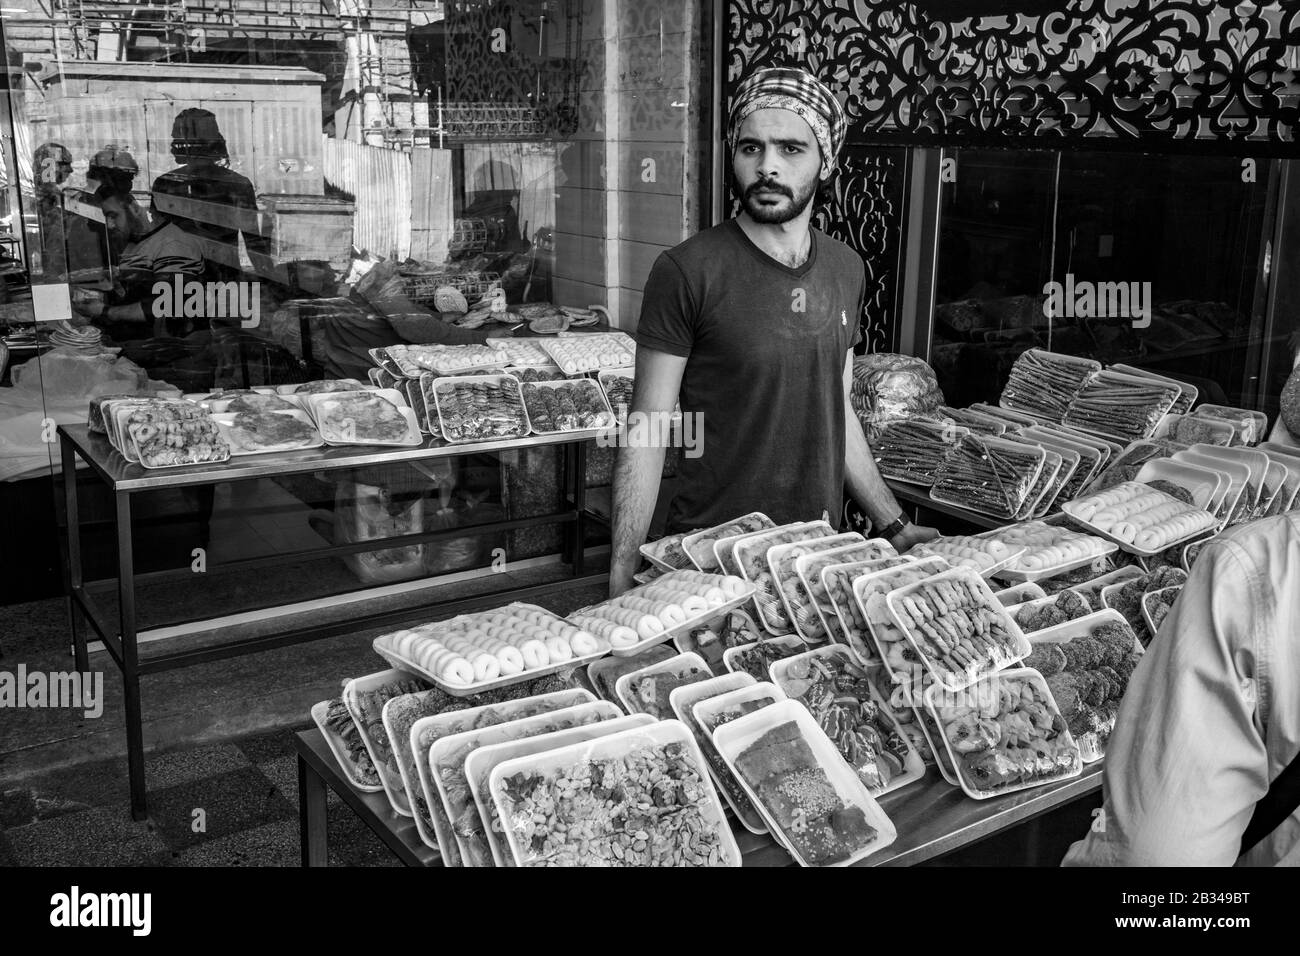 Aqaba, GIORDANIA - 31 GENNAIO 2020: Giovane uomo con barba e sciarpa a testa araba vende dolci fuori strada nella soleggiata giornata invernale, mercato pubblico della città. Immagine in bianco e nero Foto Stock